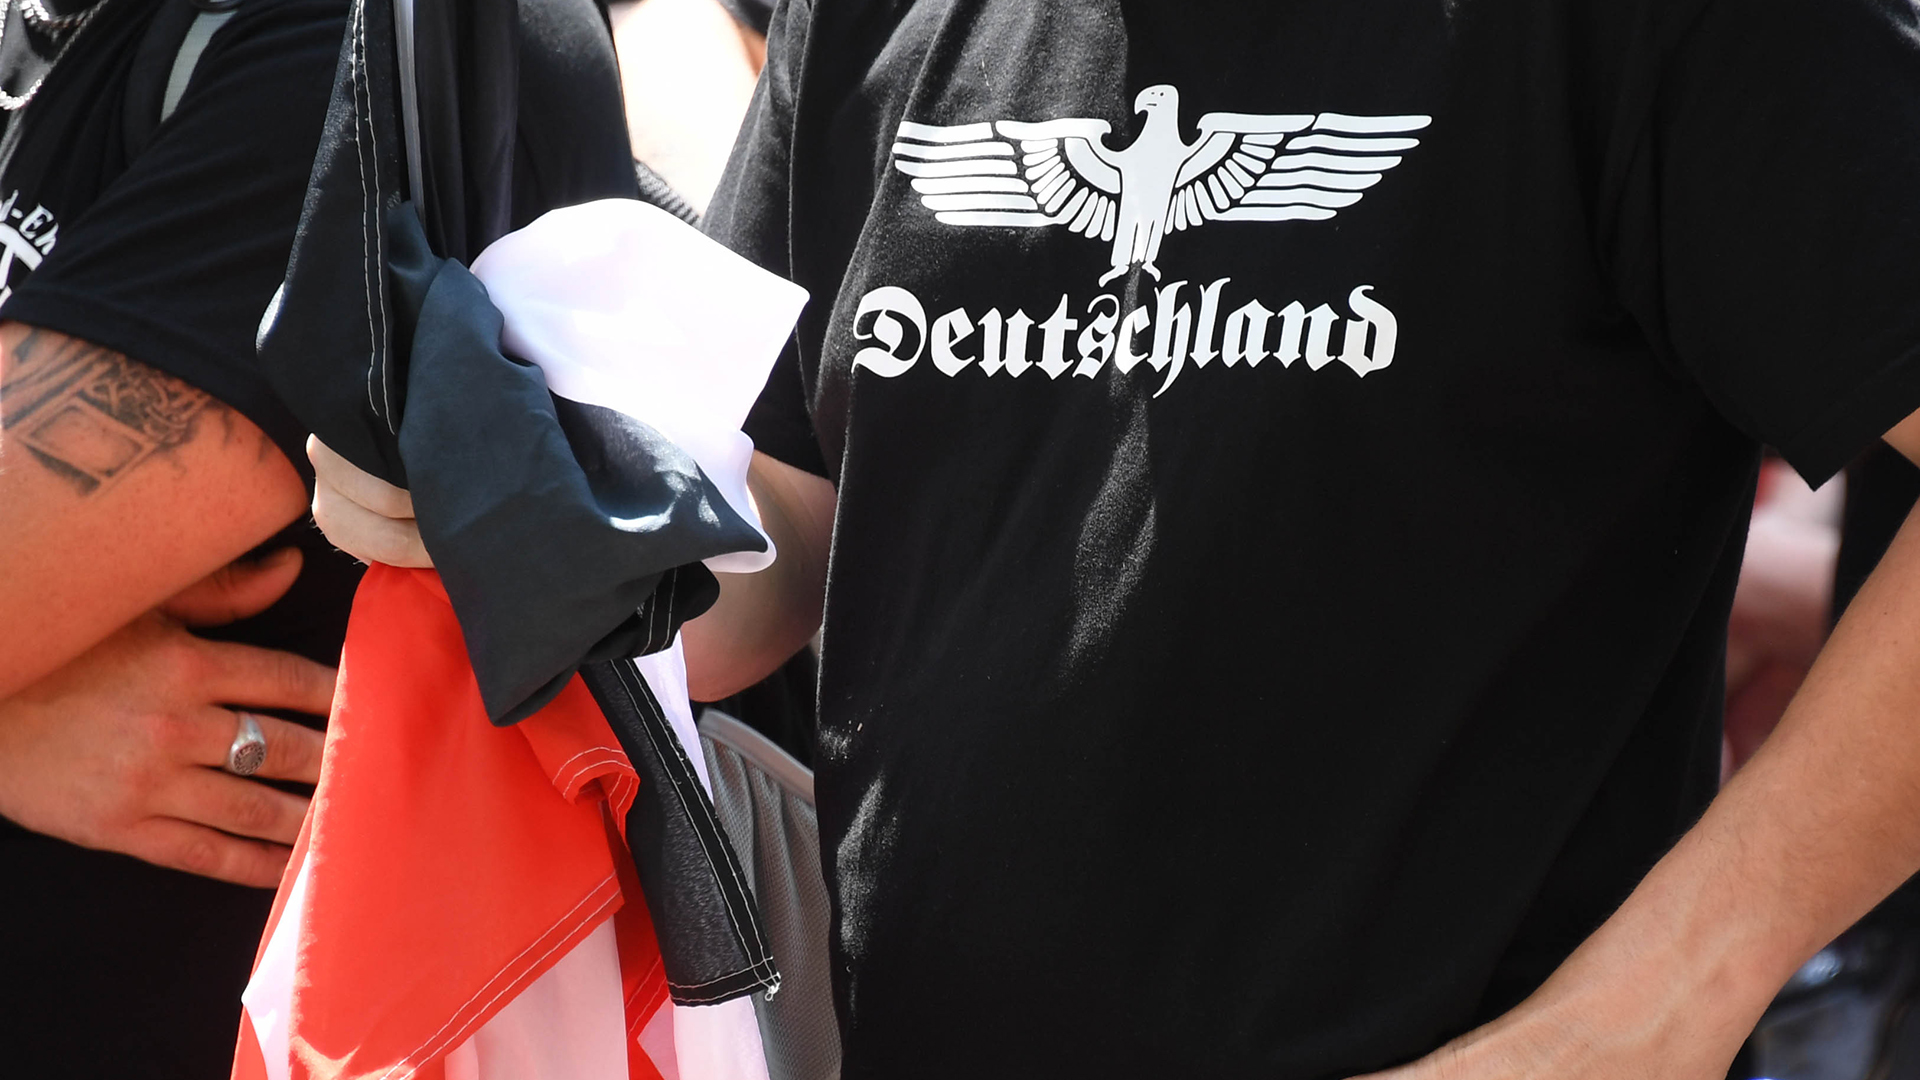 Rechtsextremer mit Deutschlandaufdruck auf Shirt | dpa